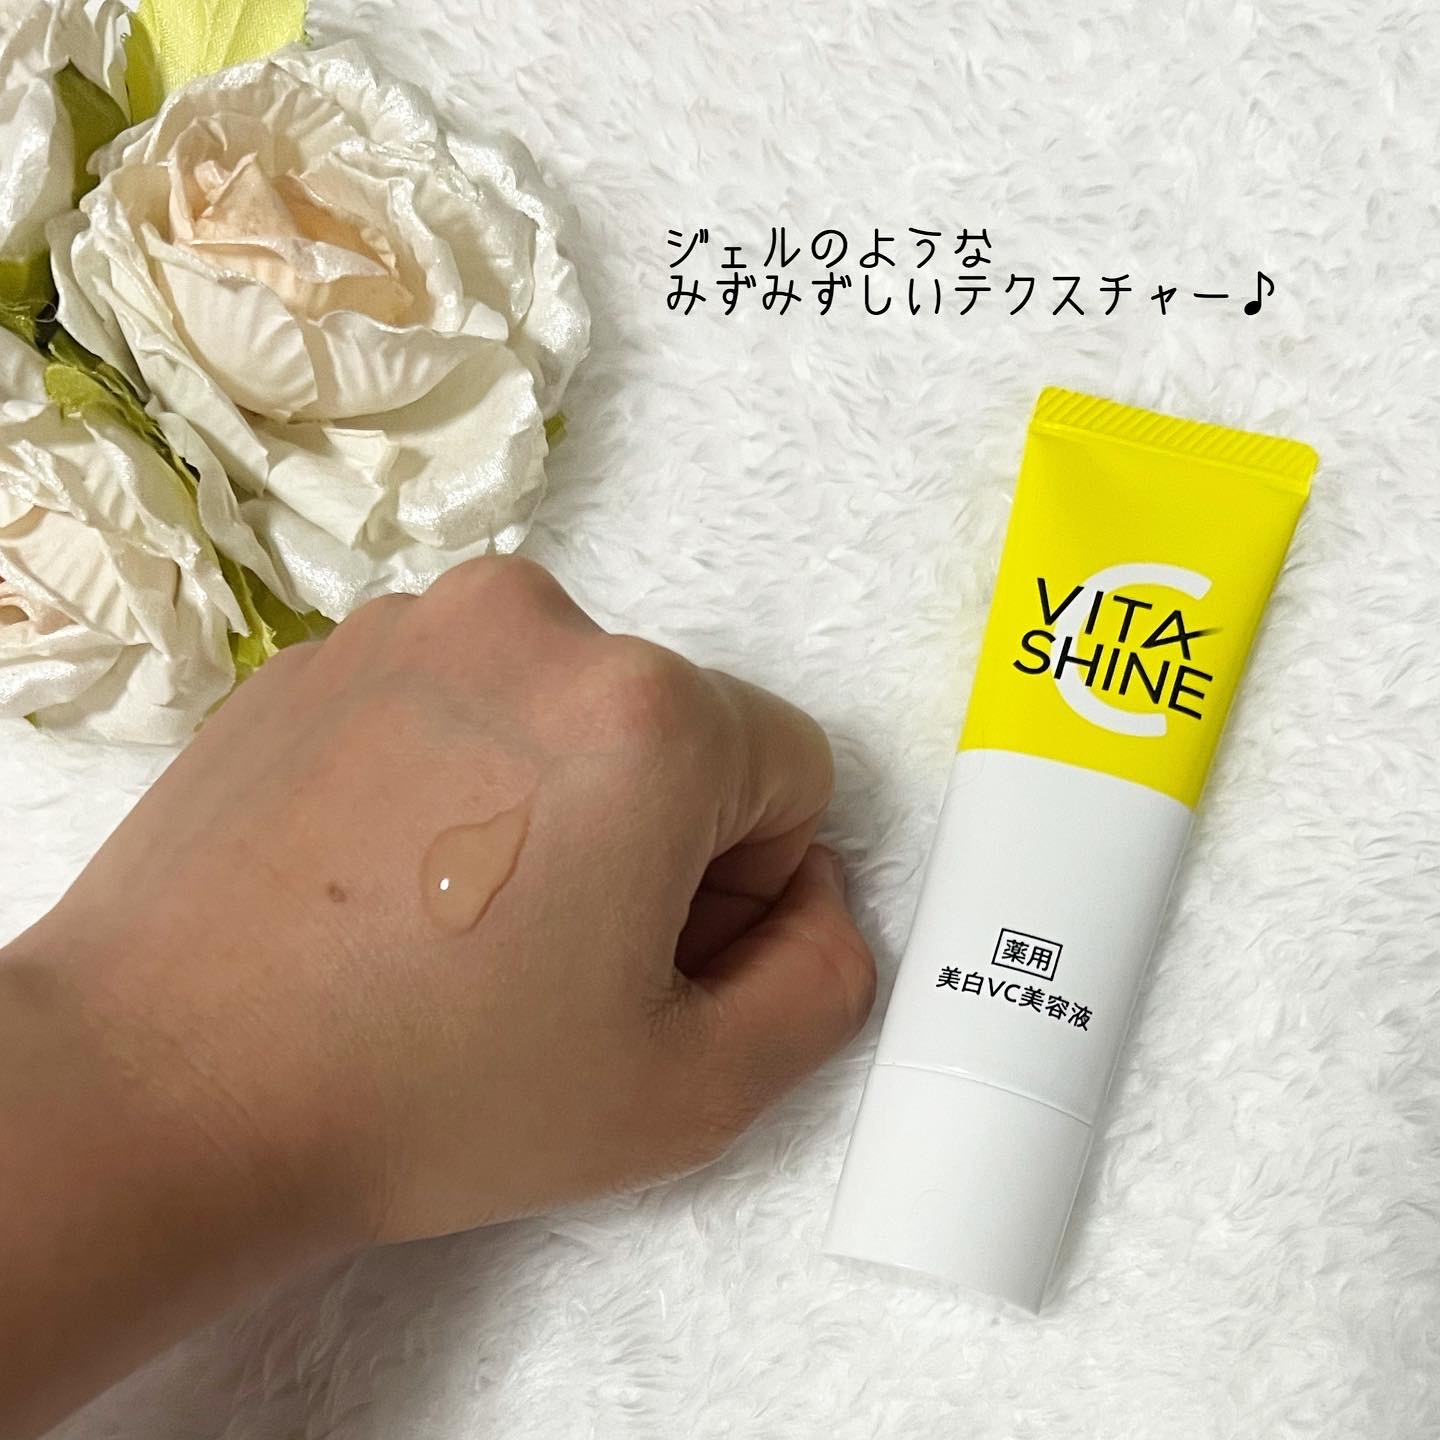 Skincle(スキンクル) VITA SHINE 薬用美白VC美容液の良い点・メリットに関するan＊°さんの口コミ画像1